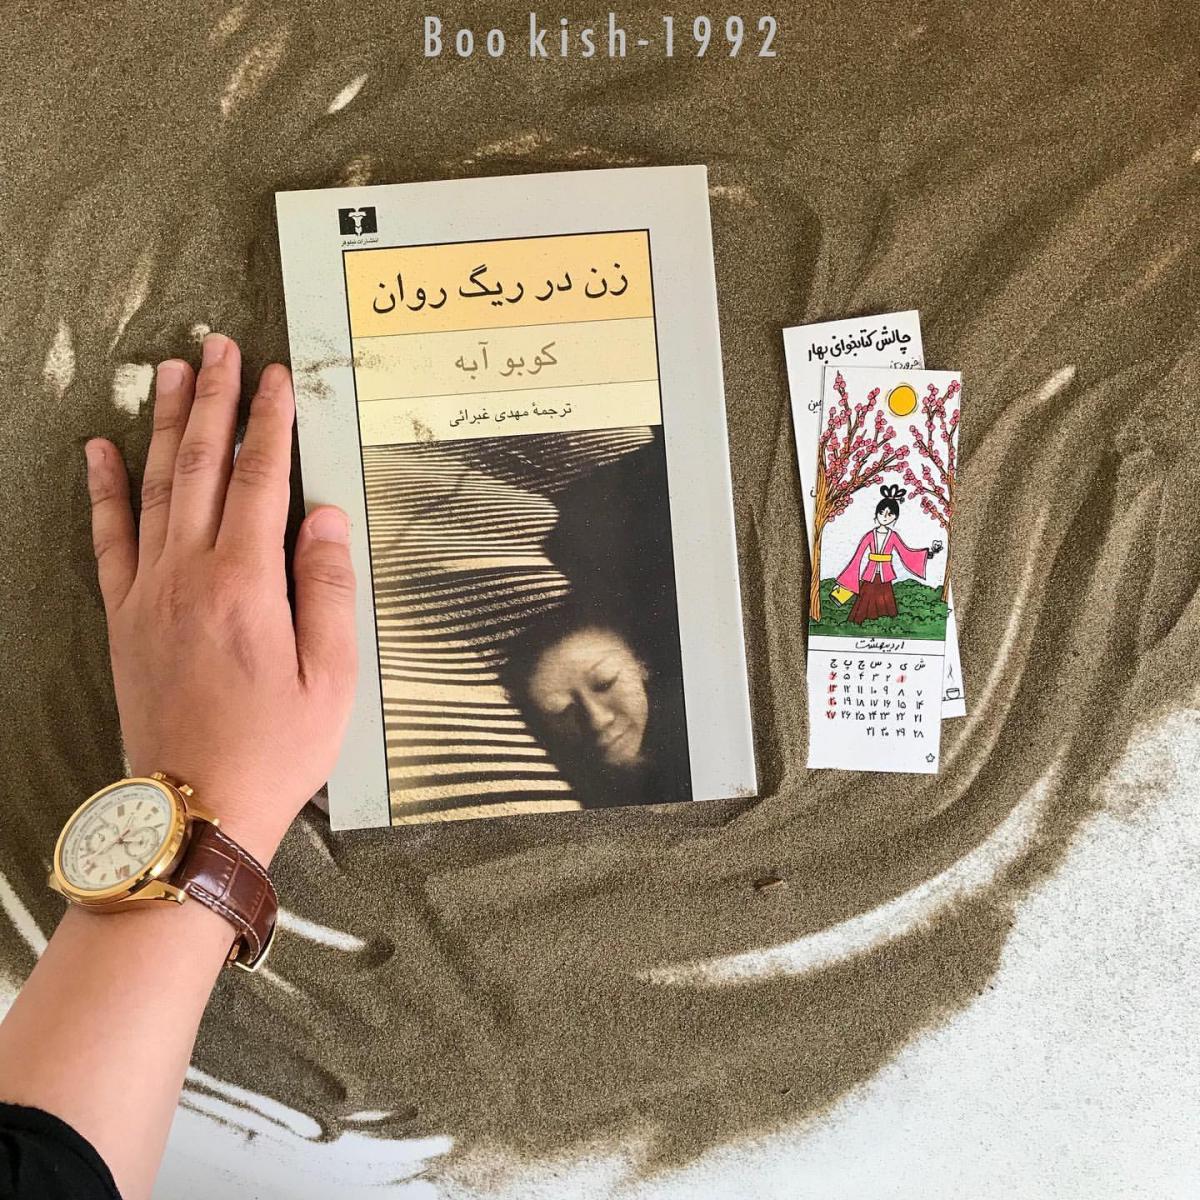 دانلود کتاب صوتی "زن در ریگ روان" با روایت "بهرام ابراهیمی"